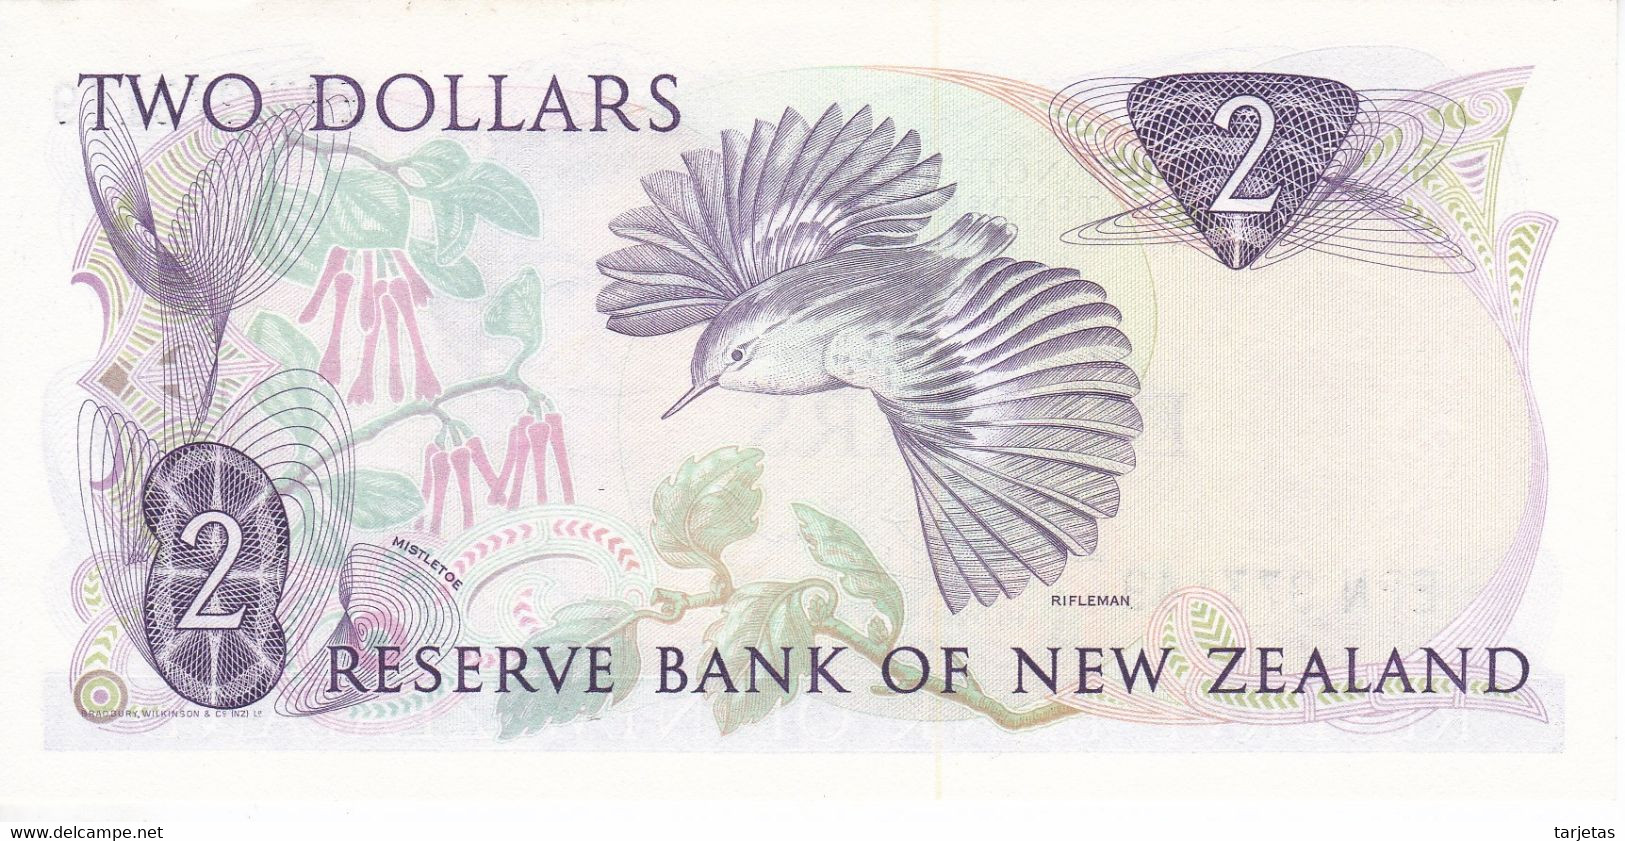 BILLETE DE NUEVA ZELANDA DE 2 DOLLARS DEL AÑO 1985 SIN CIRCULAR (UNC) (BIRD-PAJARO) (BANKNOTE) - Neuseeland